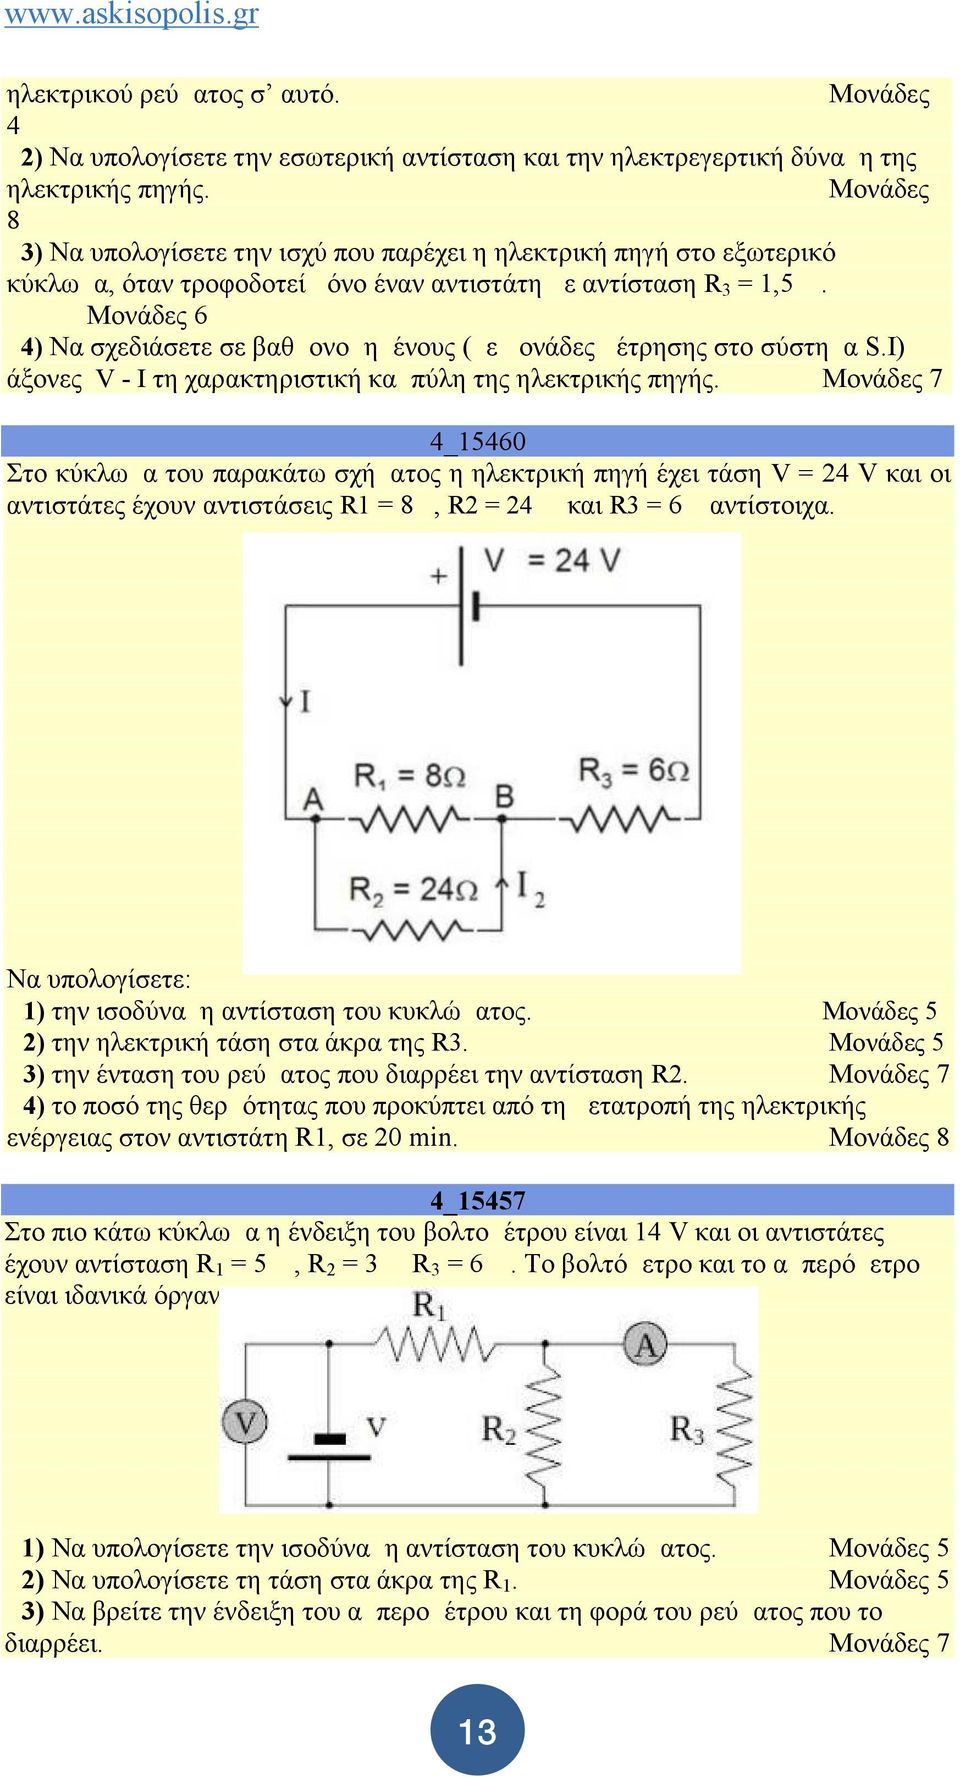 Δ4) Να σχεδιάσετε σε βαθμονομημένους (με μονάδες μέτρησης στο σύστημα S.I) άξονες V - I τη χαρακτηριστική καμπύλη της ηλεκτρικής πηγής.